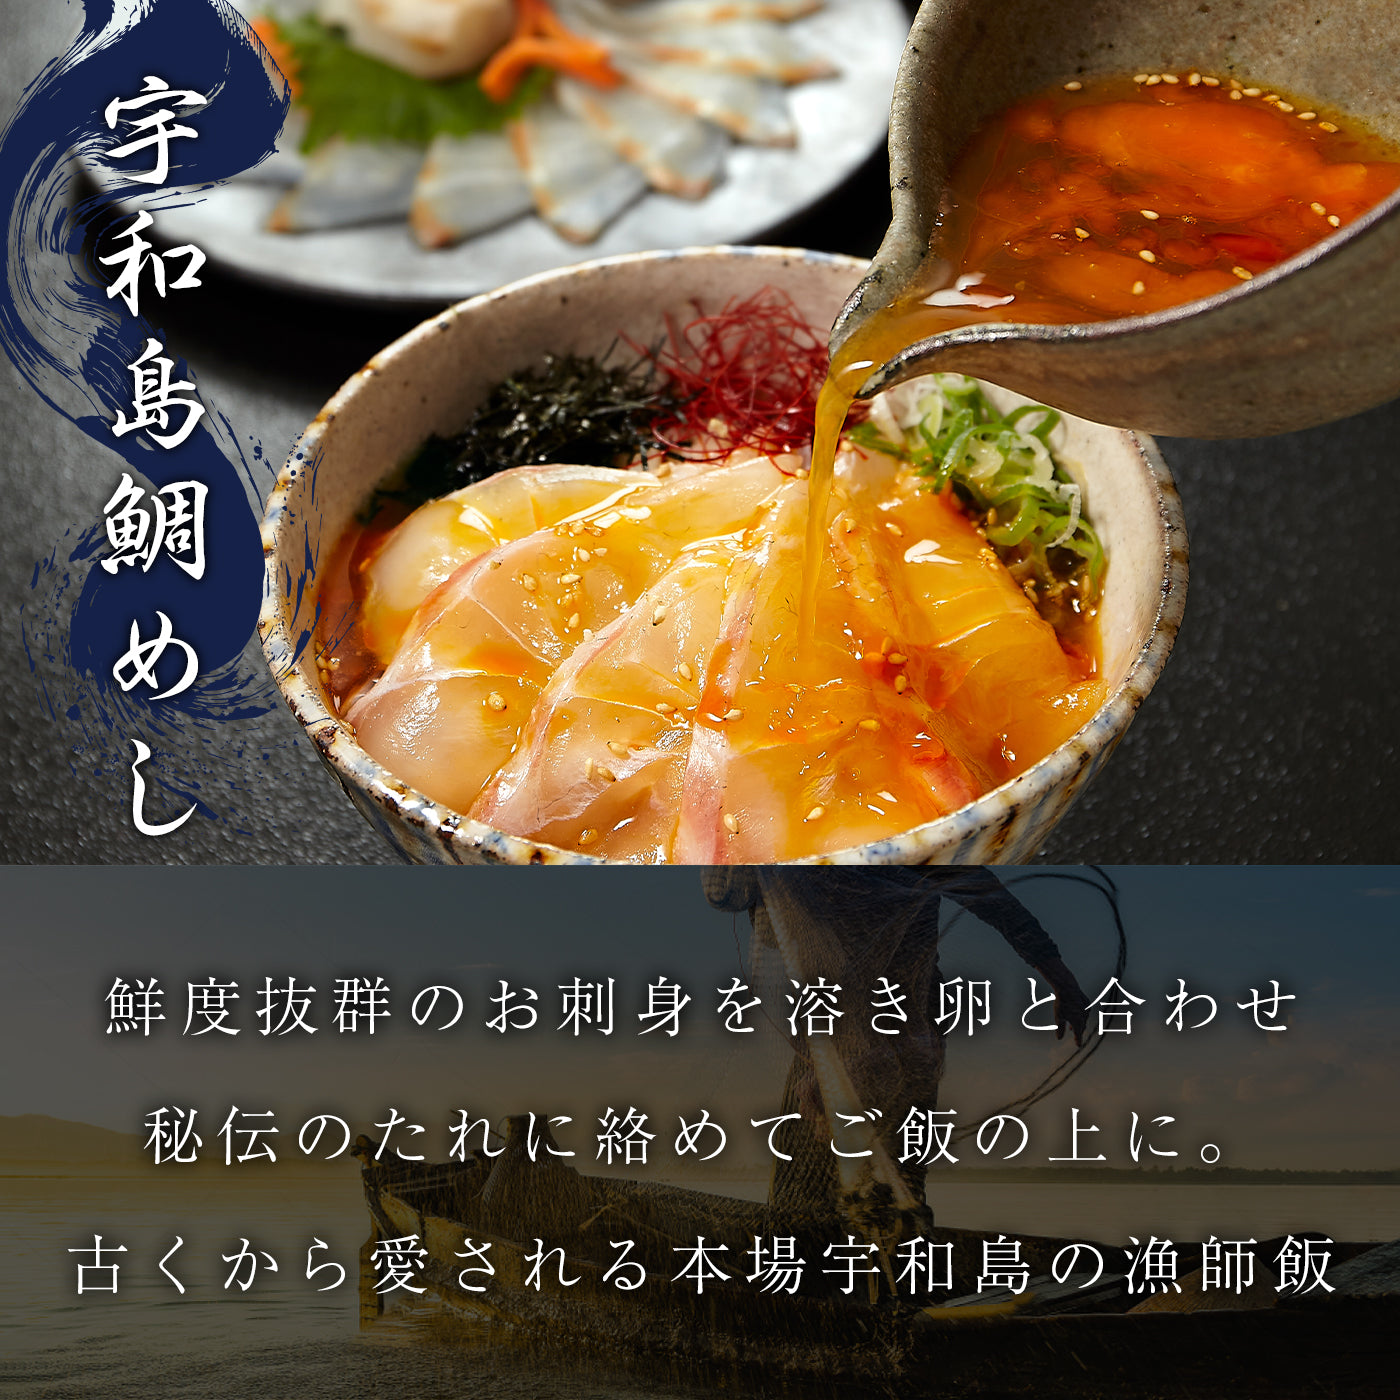 【父の日ギフト】愛媛の真心づくしセット 真鯛料理7食詰め合わせ